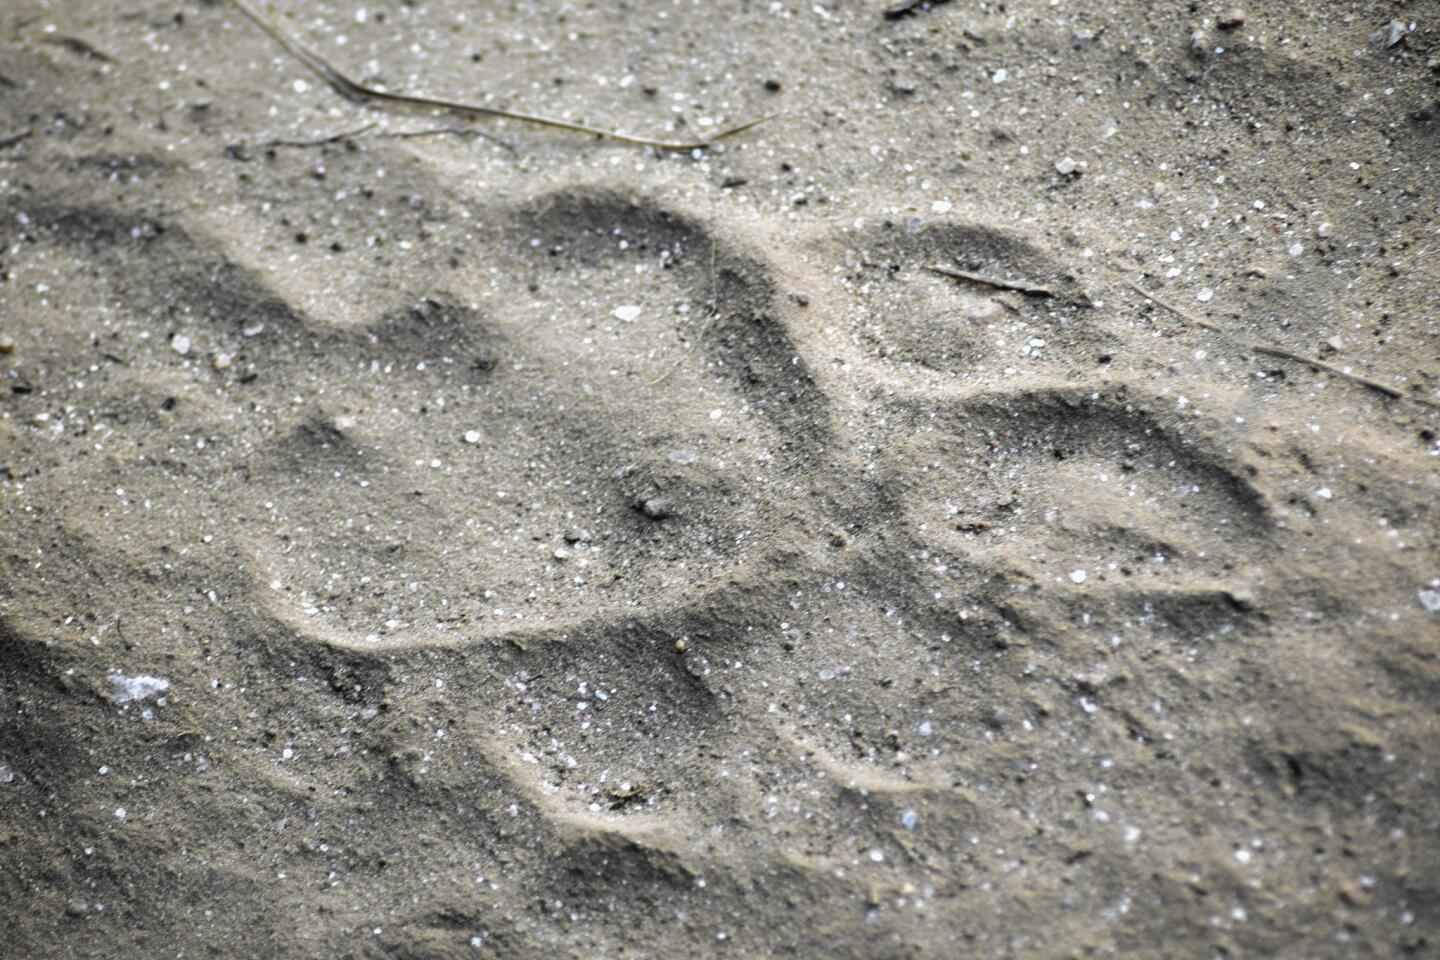 Tiger tracks